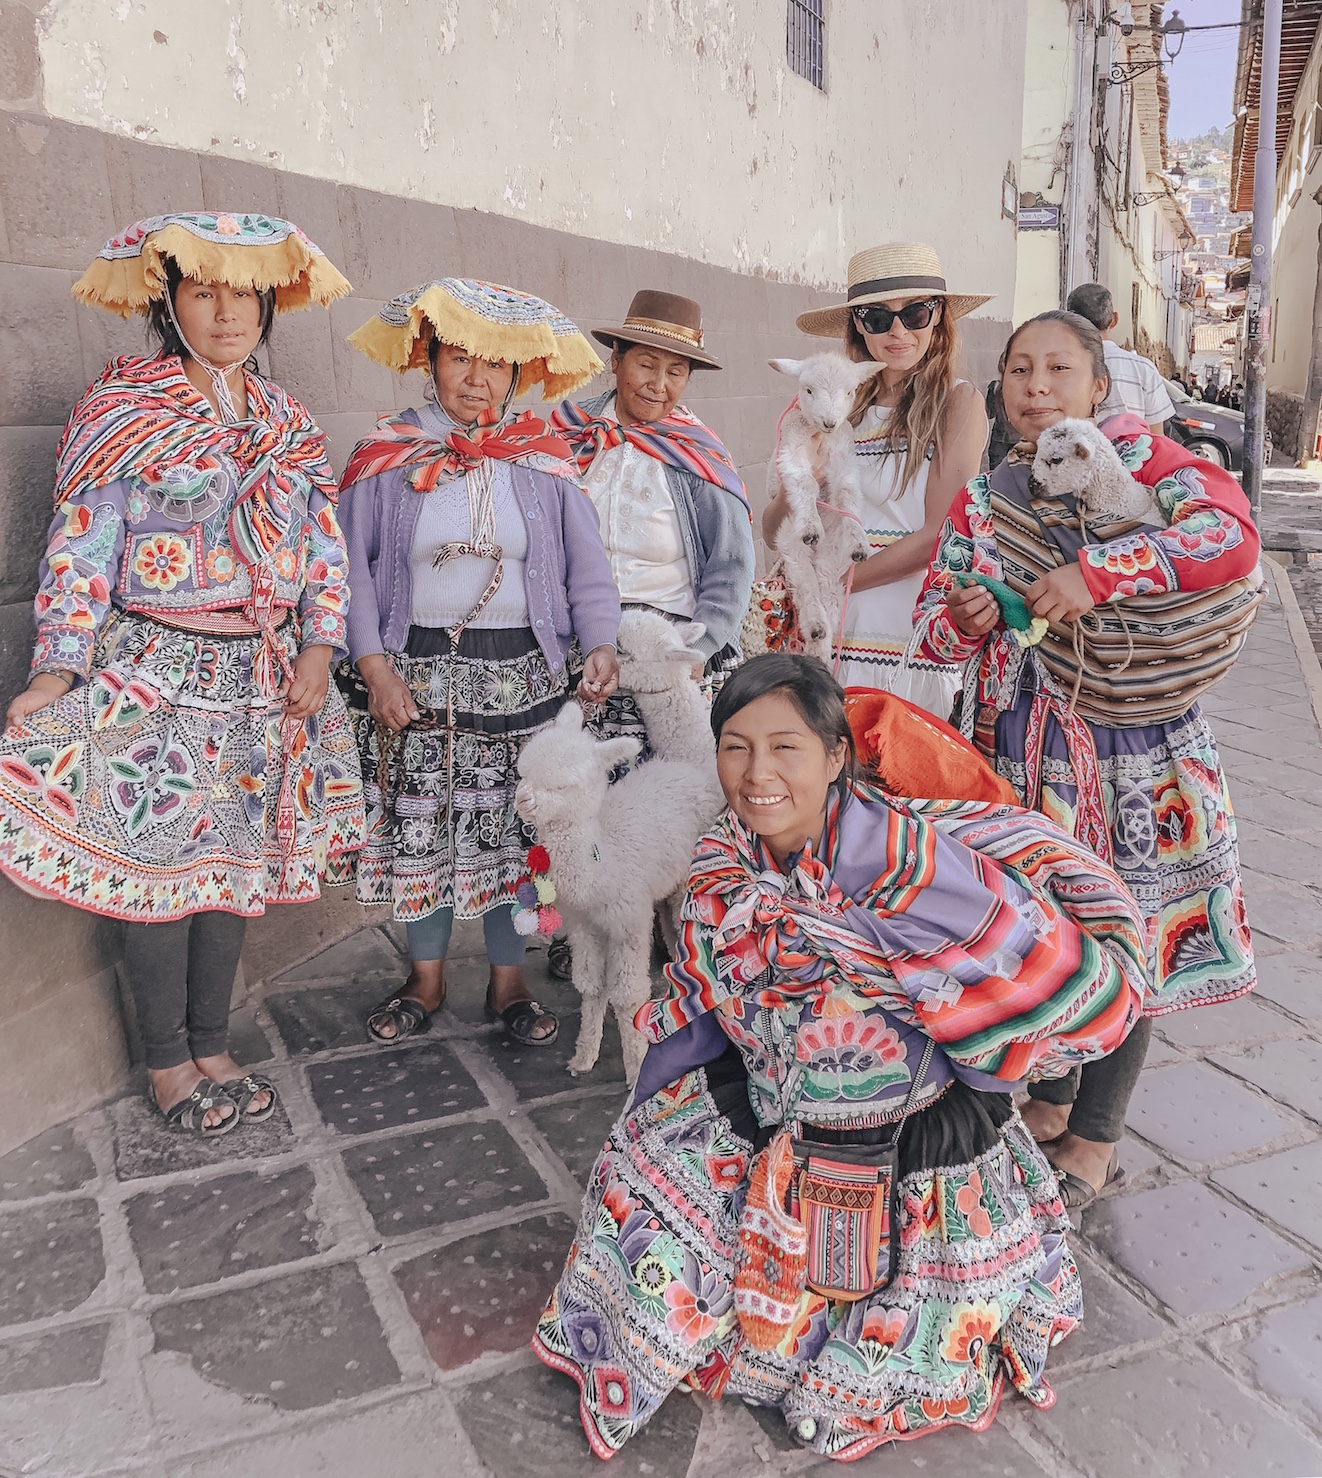 Cuzco travel guide – Peru